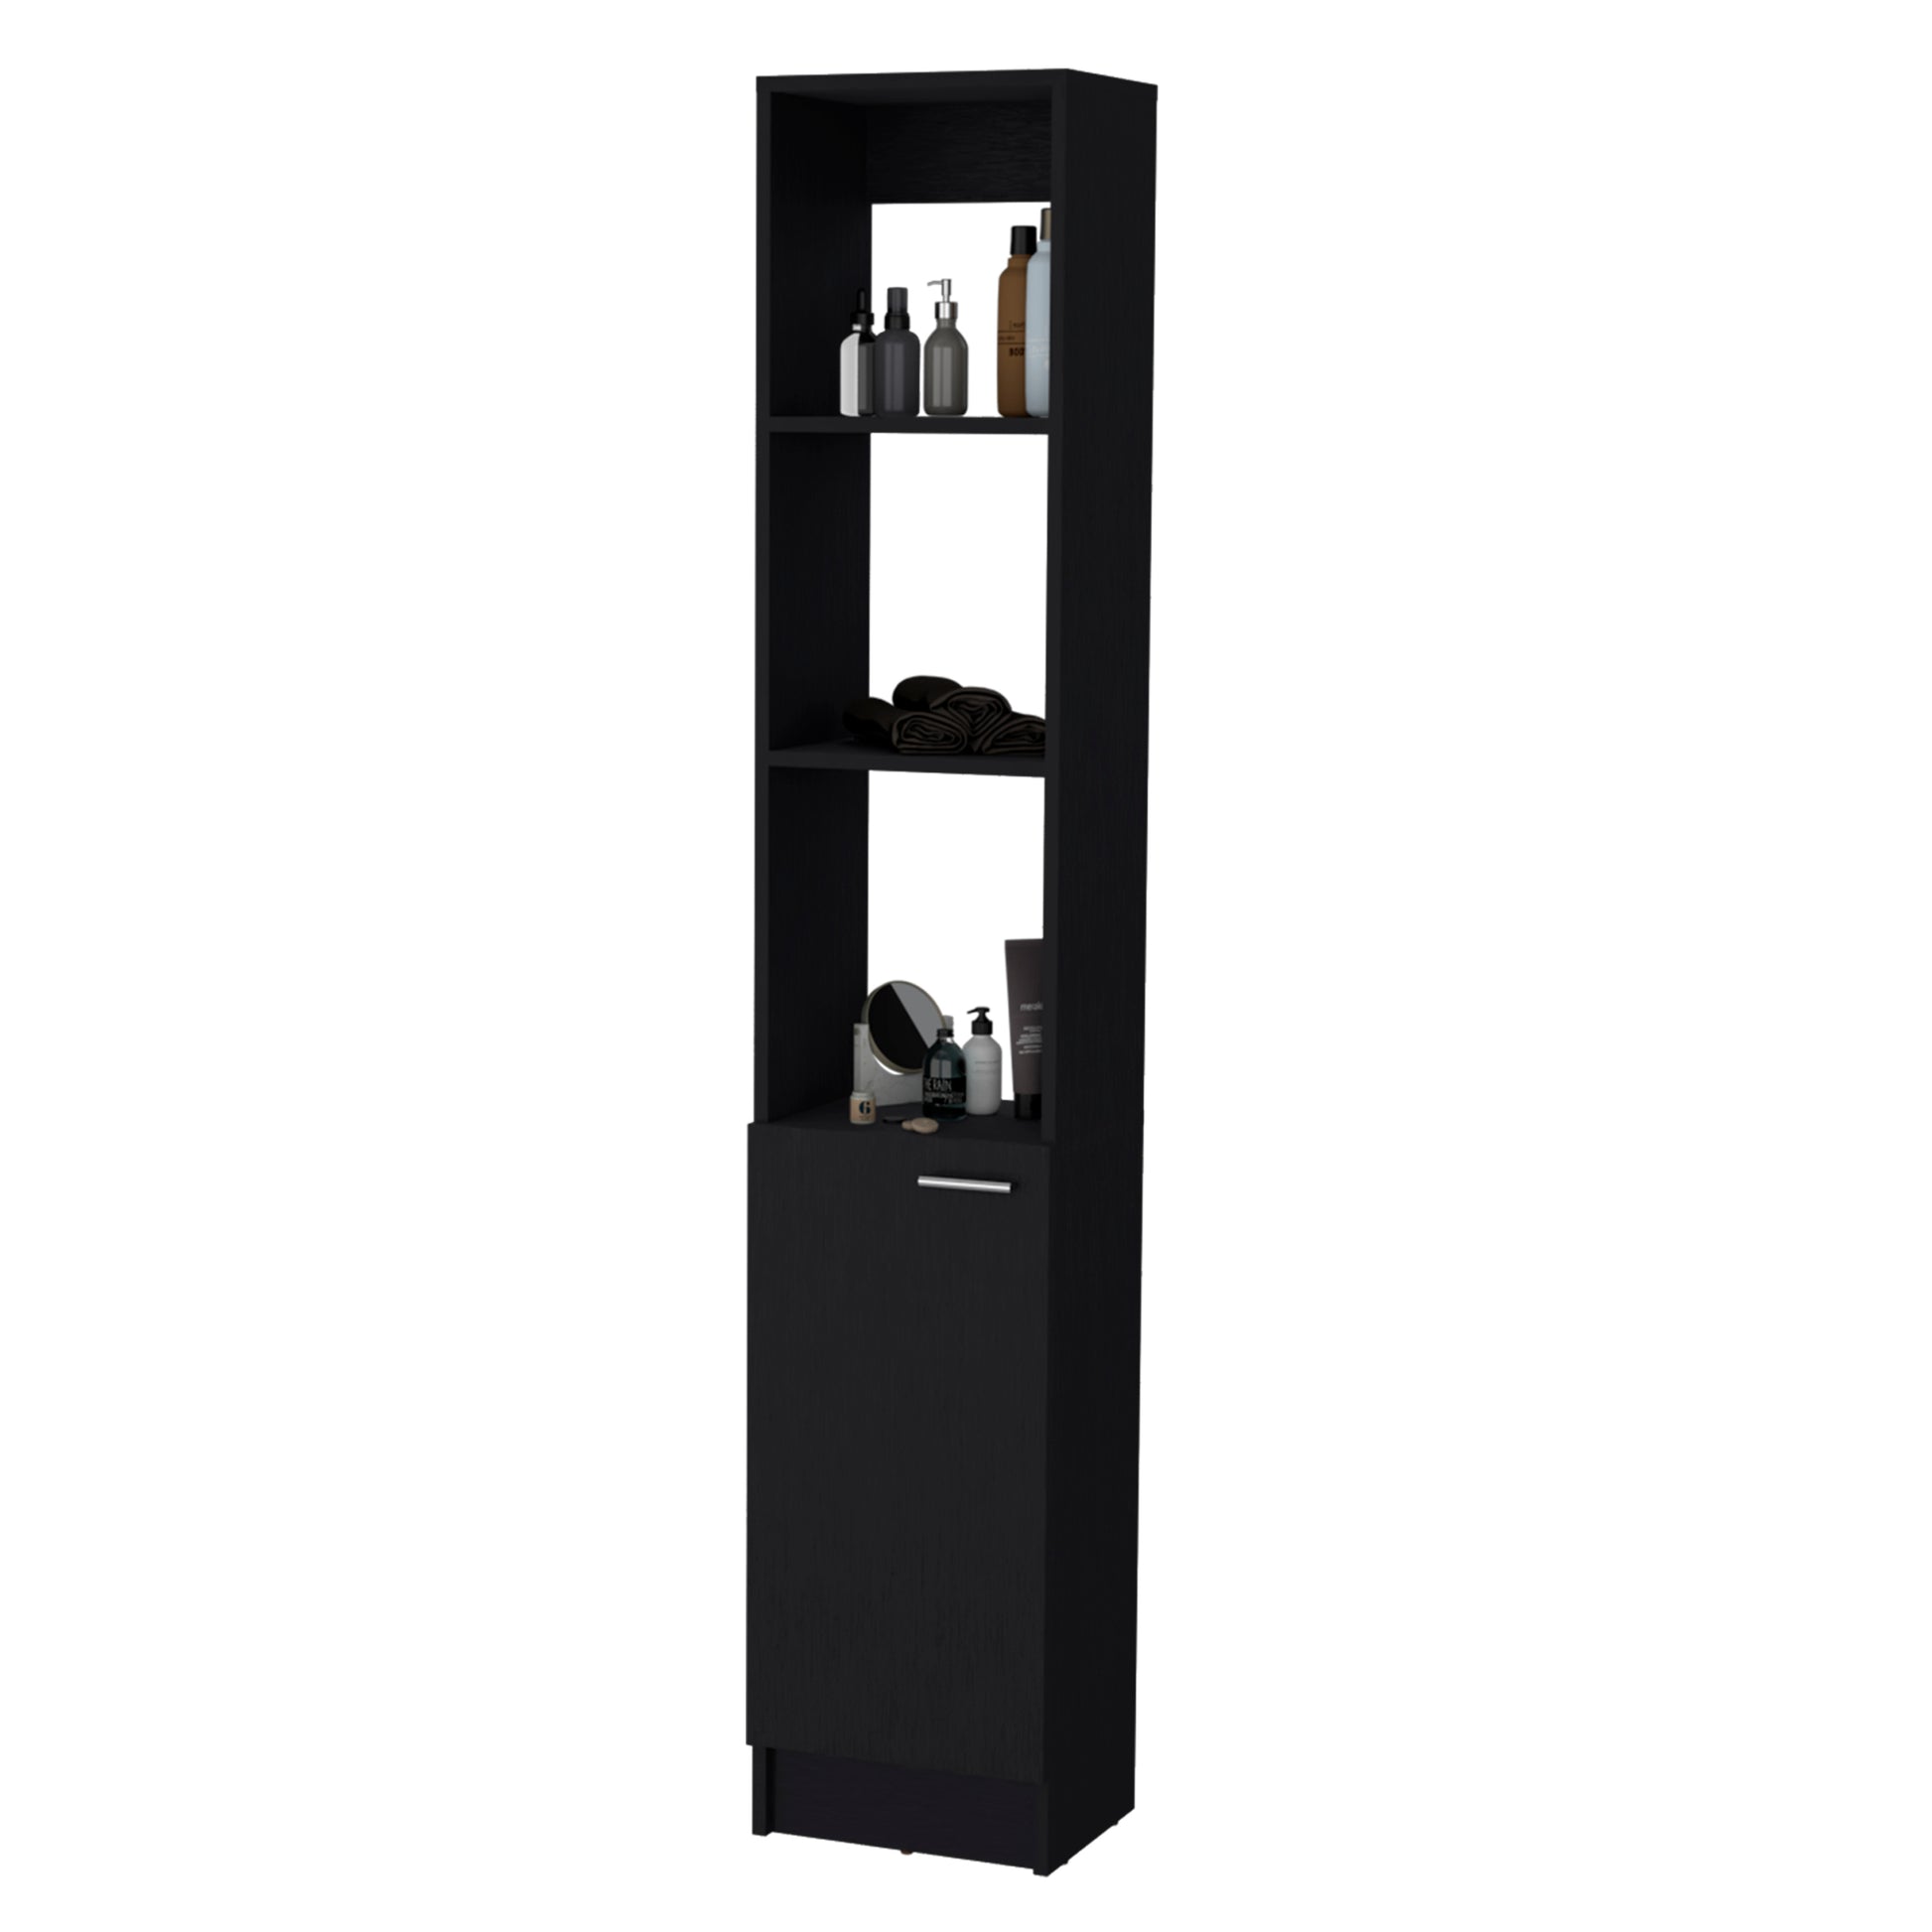 Brenda Linen Cabinet With 1 Door, 3 Open Shelves